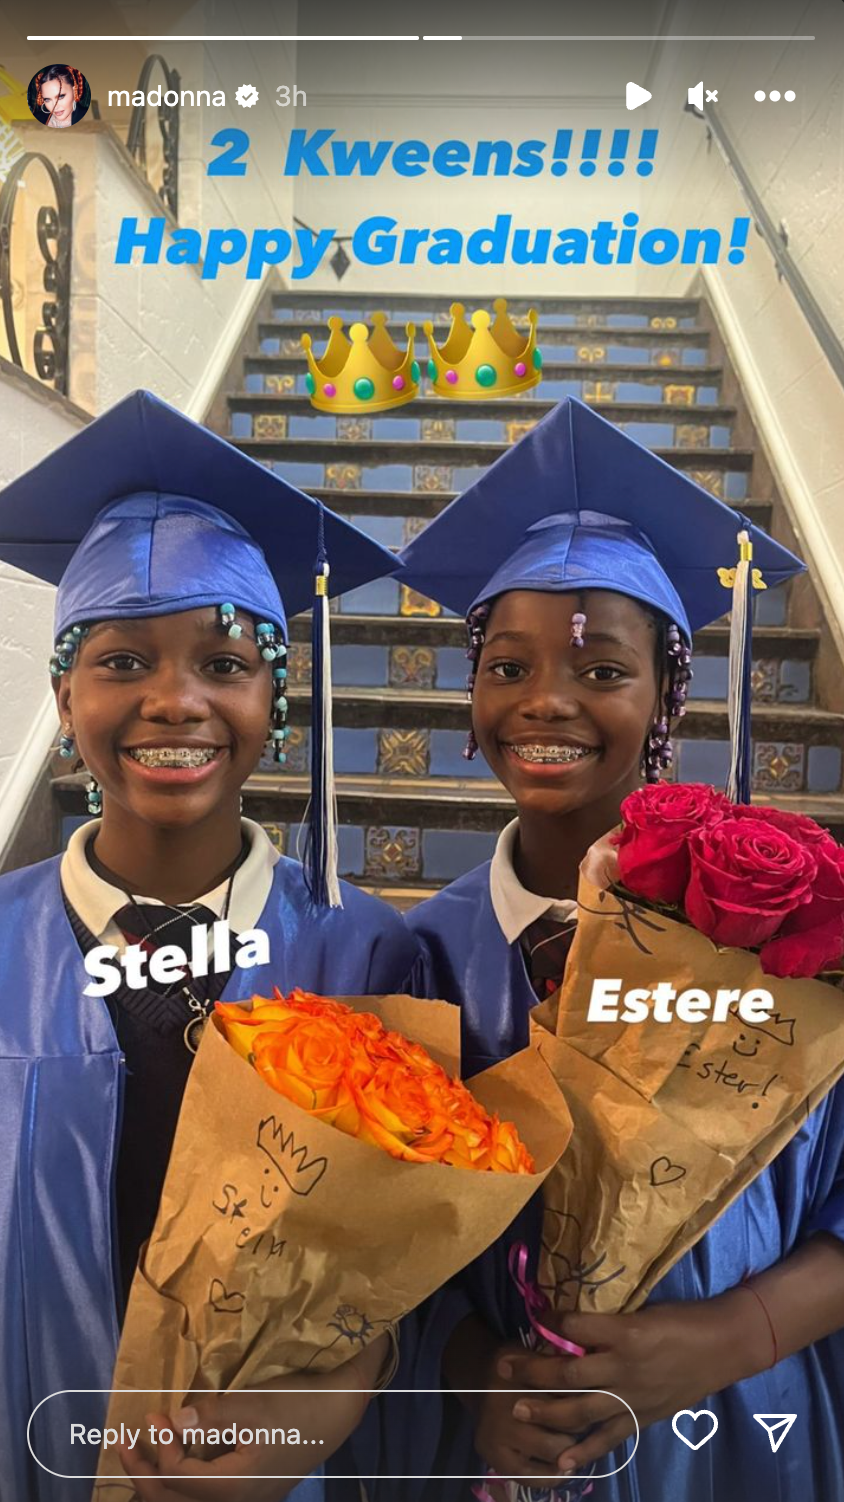 Madonna twin daughter Estere and Stella celebrate graduation